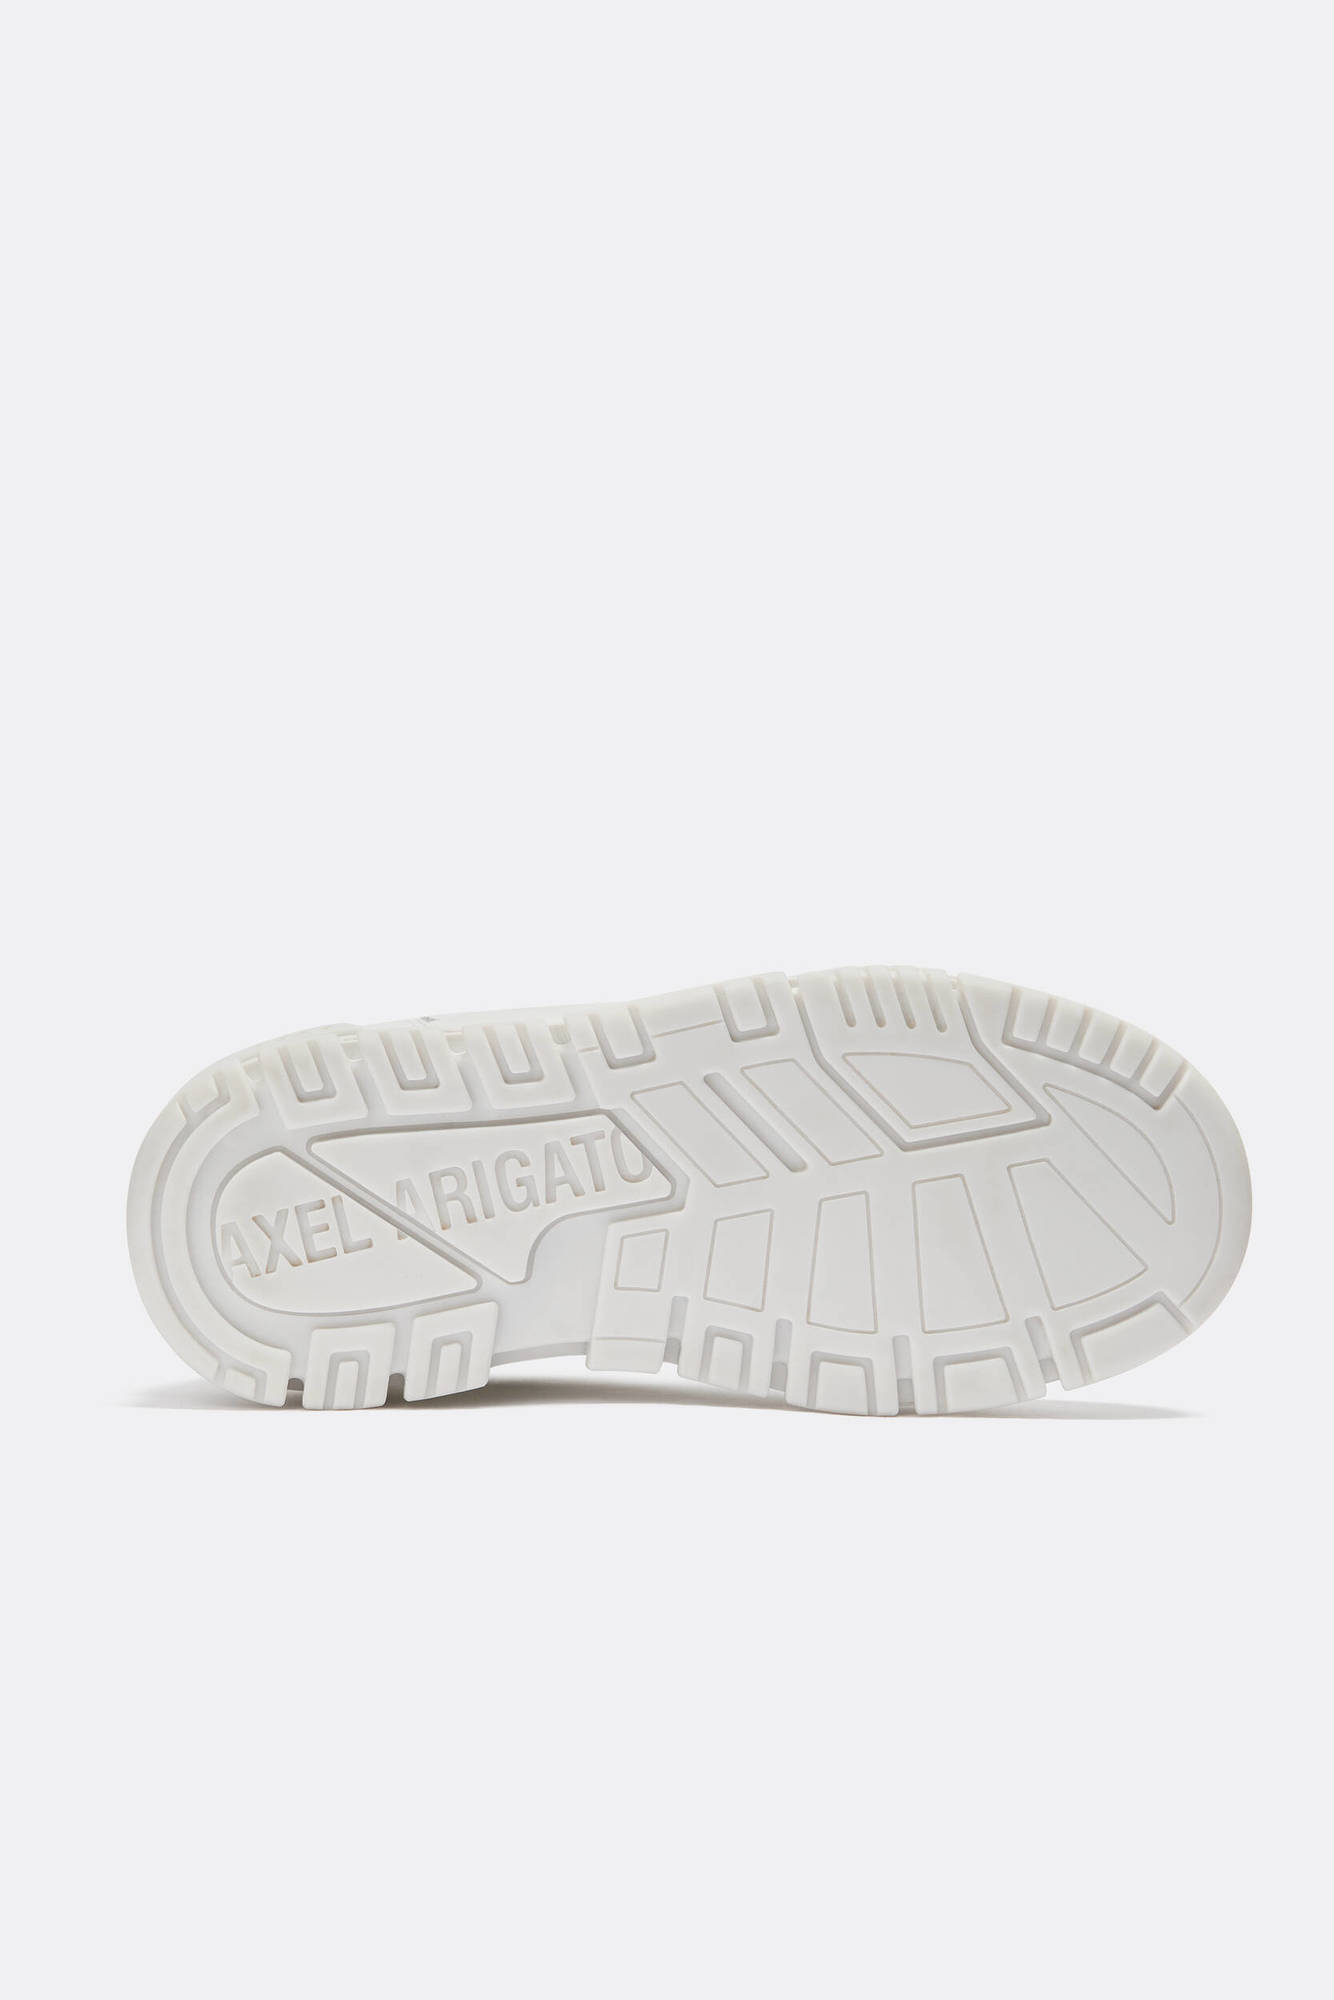 AXEL ARIGATO Area Lo Sneaker in White/White 41